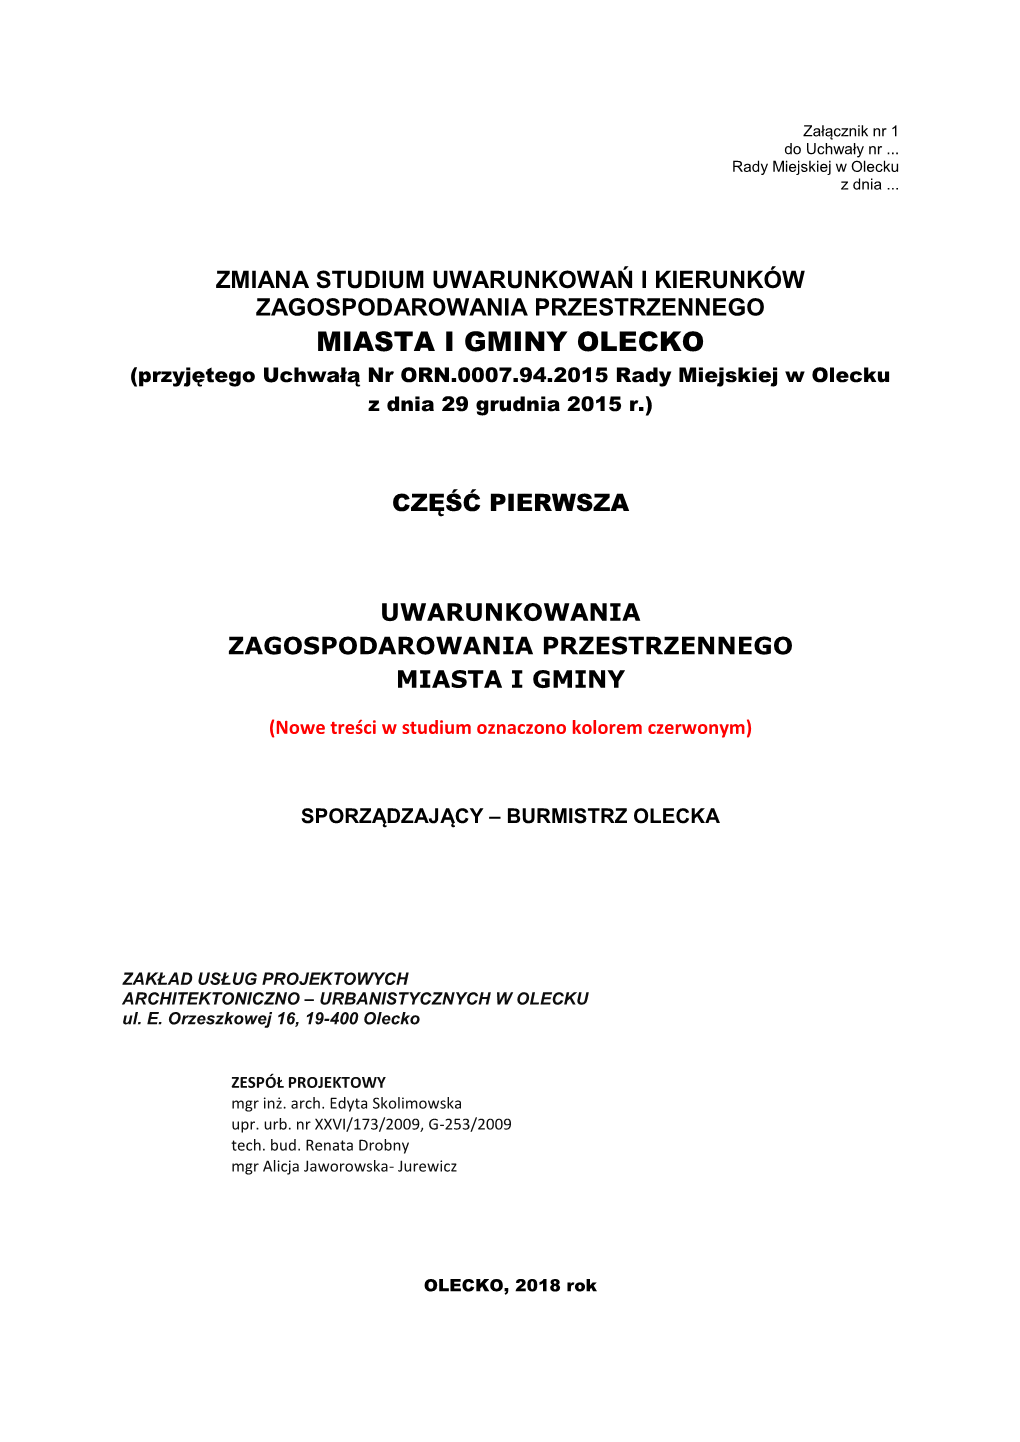 MIASTA I GMINY OLECKO (Przyjętego Uchwałą Nr ORN.0007.94.2015 Rady Miejskiej W Olecku Z Dnia 29 Grudnia 2015 R.)